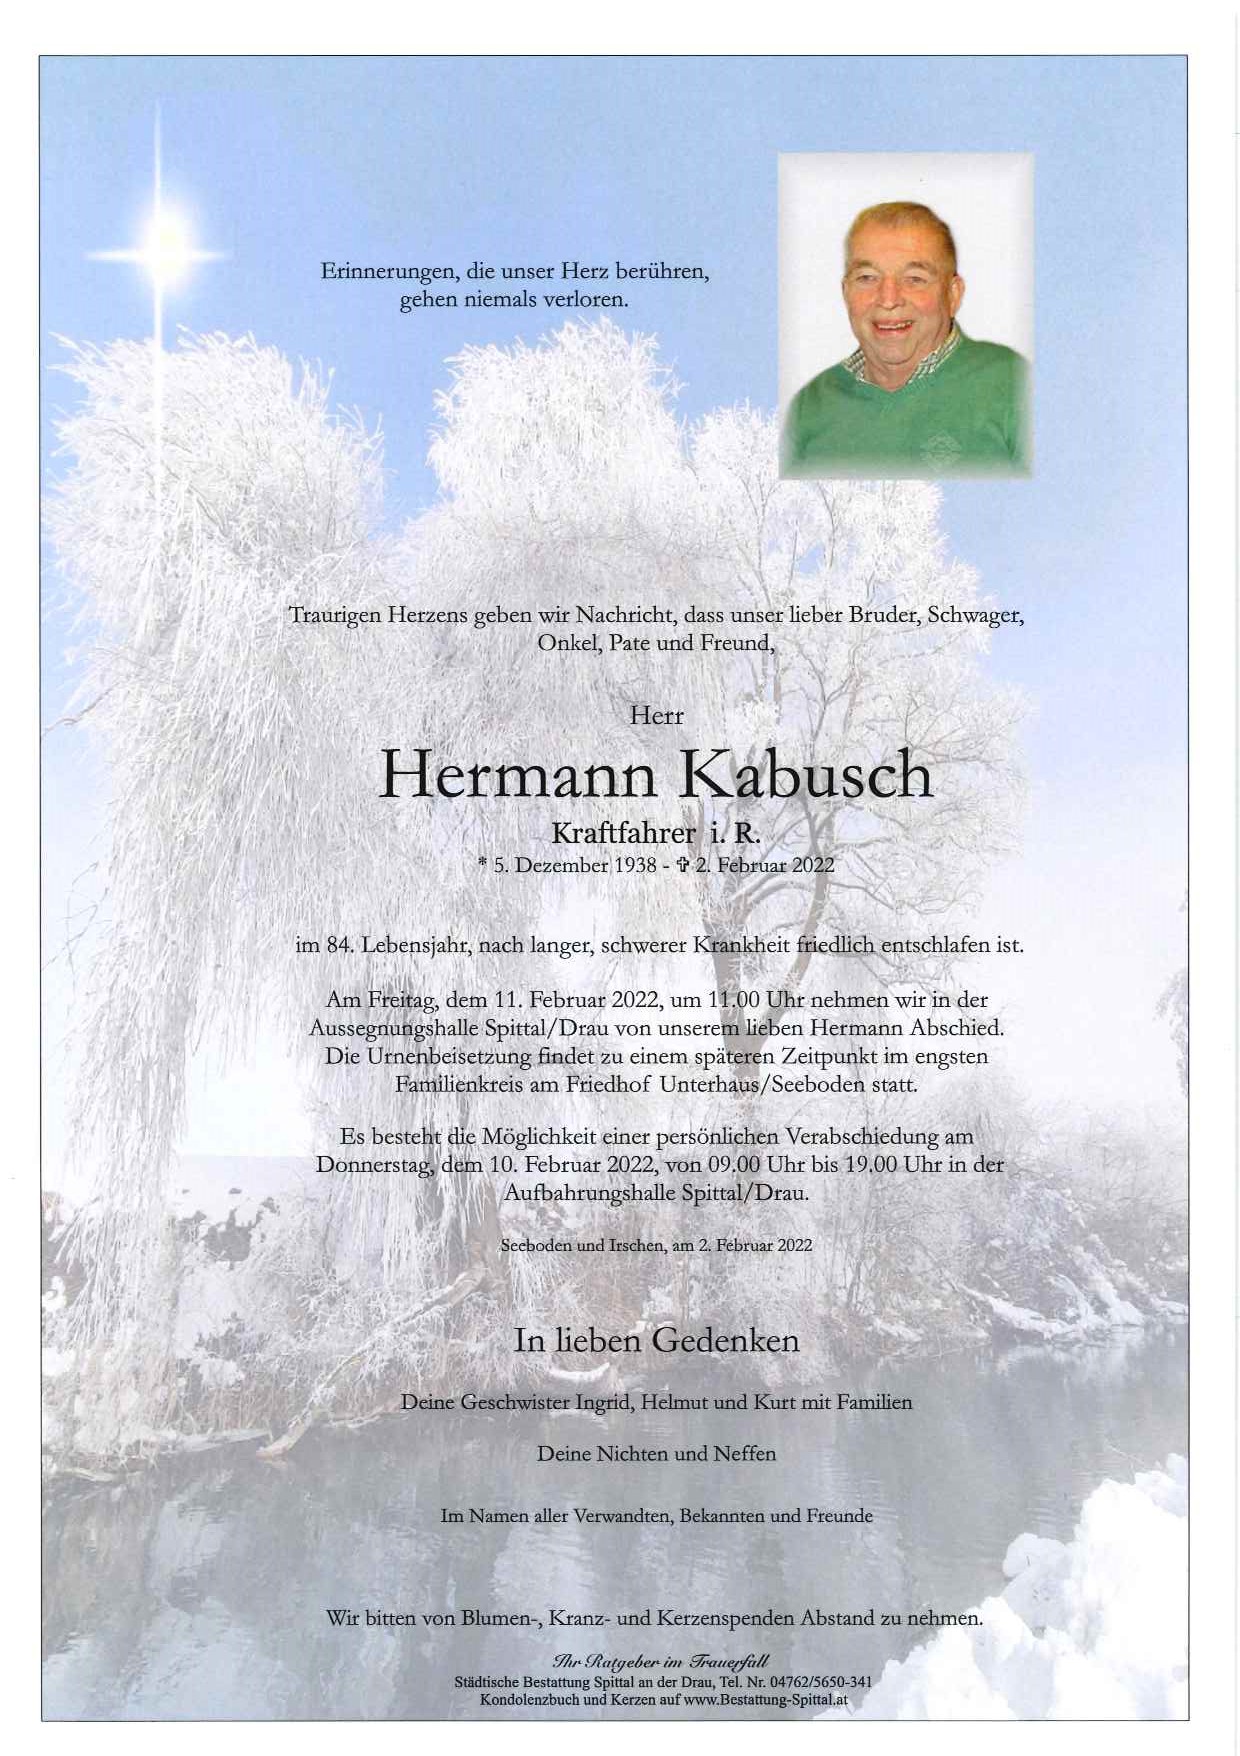 Hermann Kabusch